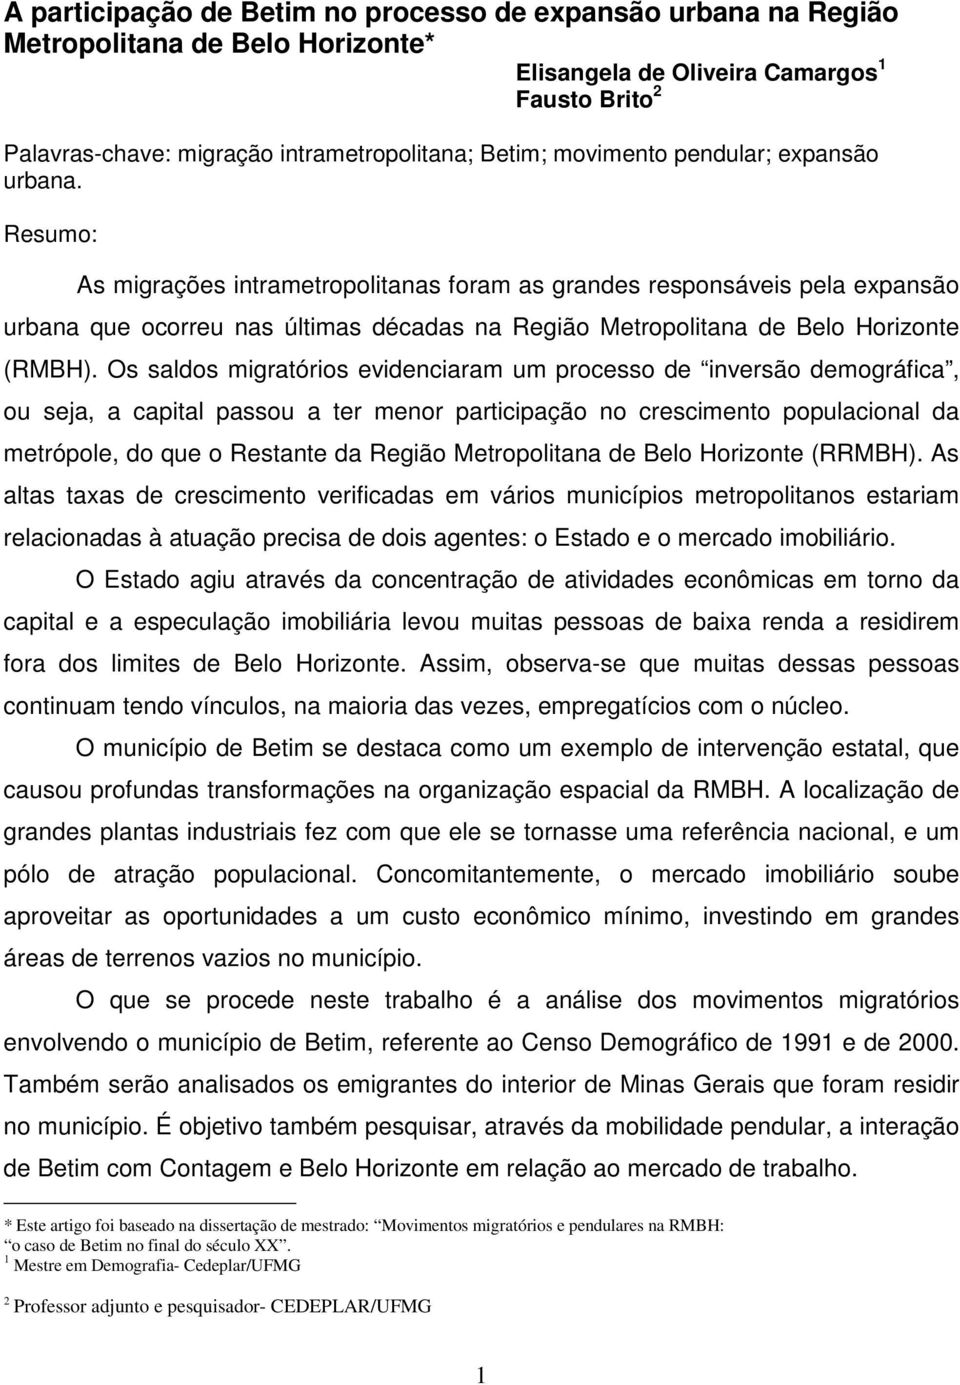 Resumo: As migrações intrametropolitanas foram as grandes responsáveis pela expansão urbana que ocorreu nas últimas décadas na Região Metropolitana de Belo Horizonte (RMBH).